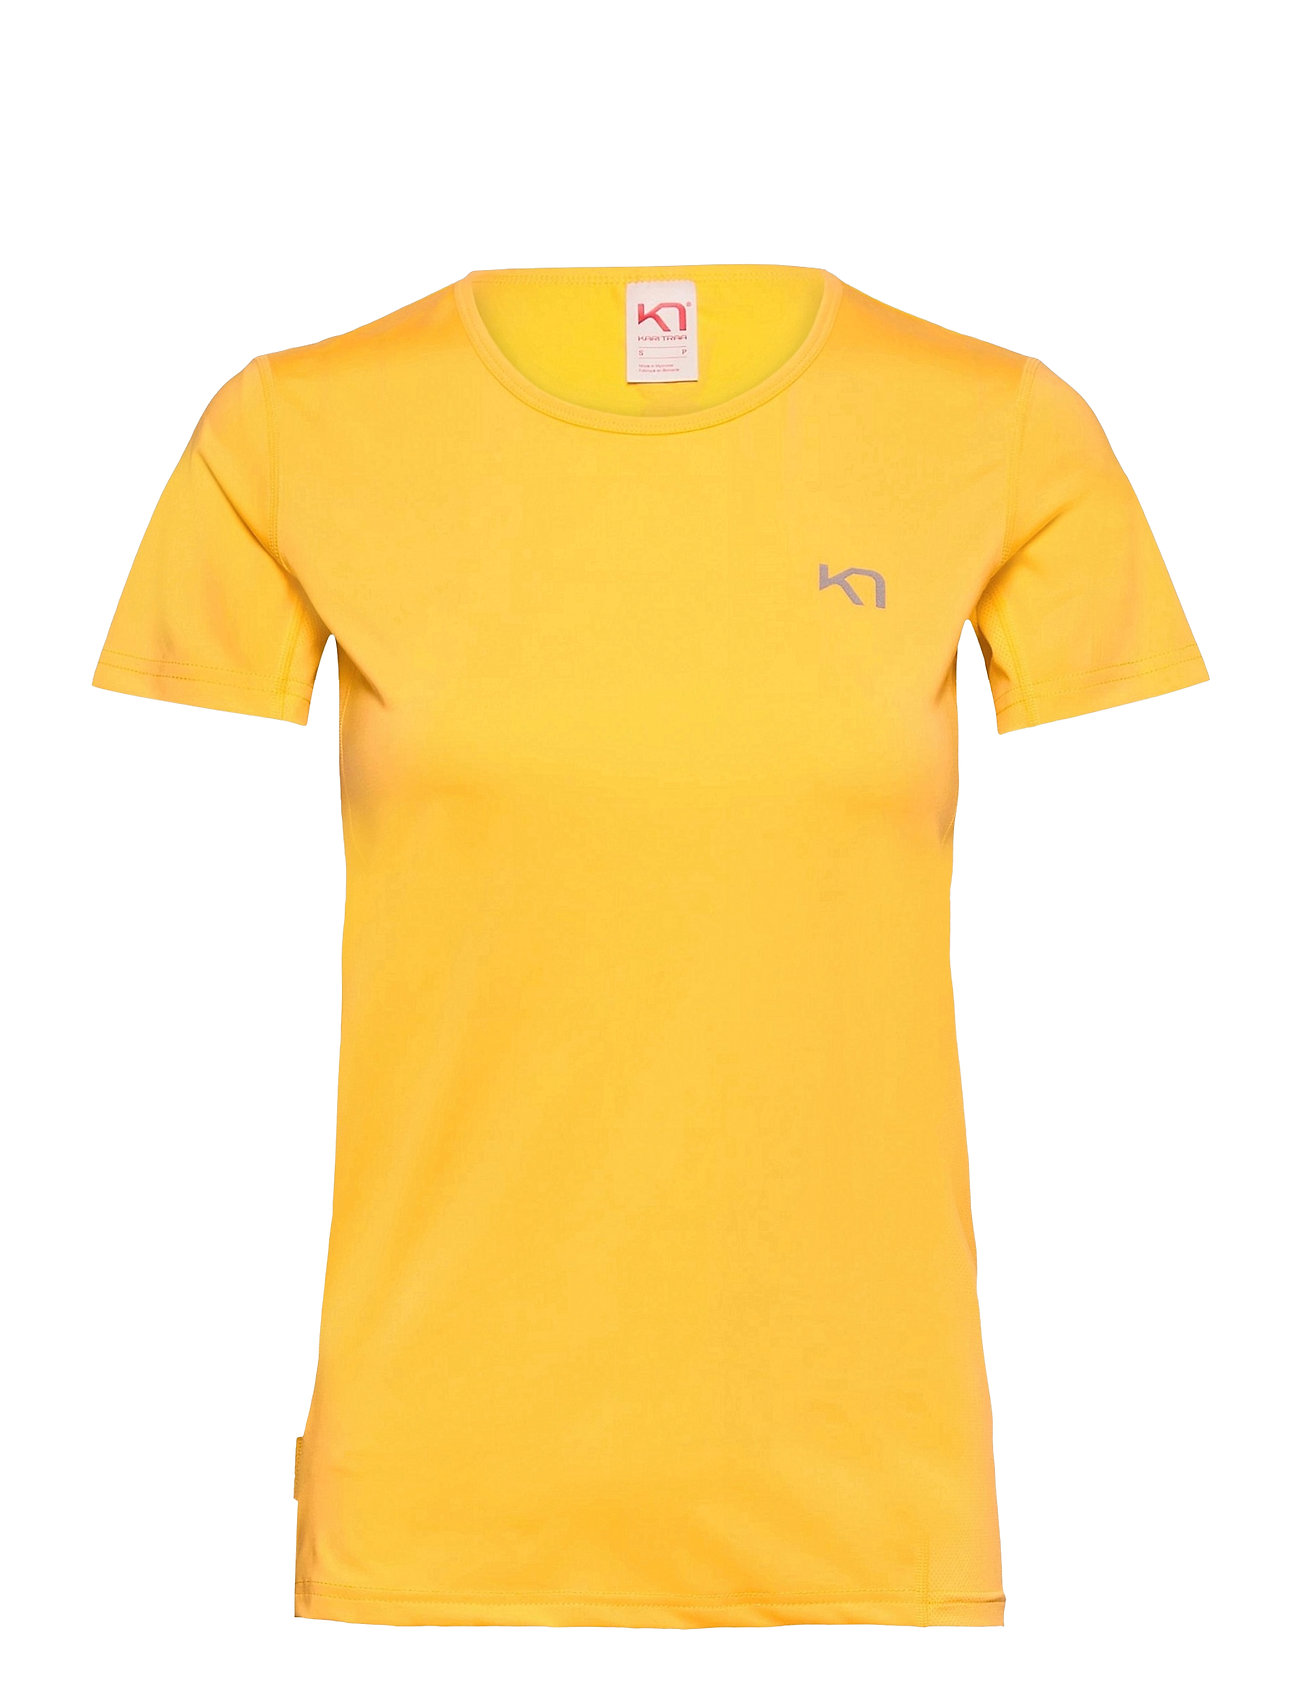 Nora Tee T-shirts & Tops Short-sleeved Keltainen Kari Traa